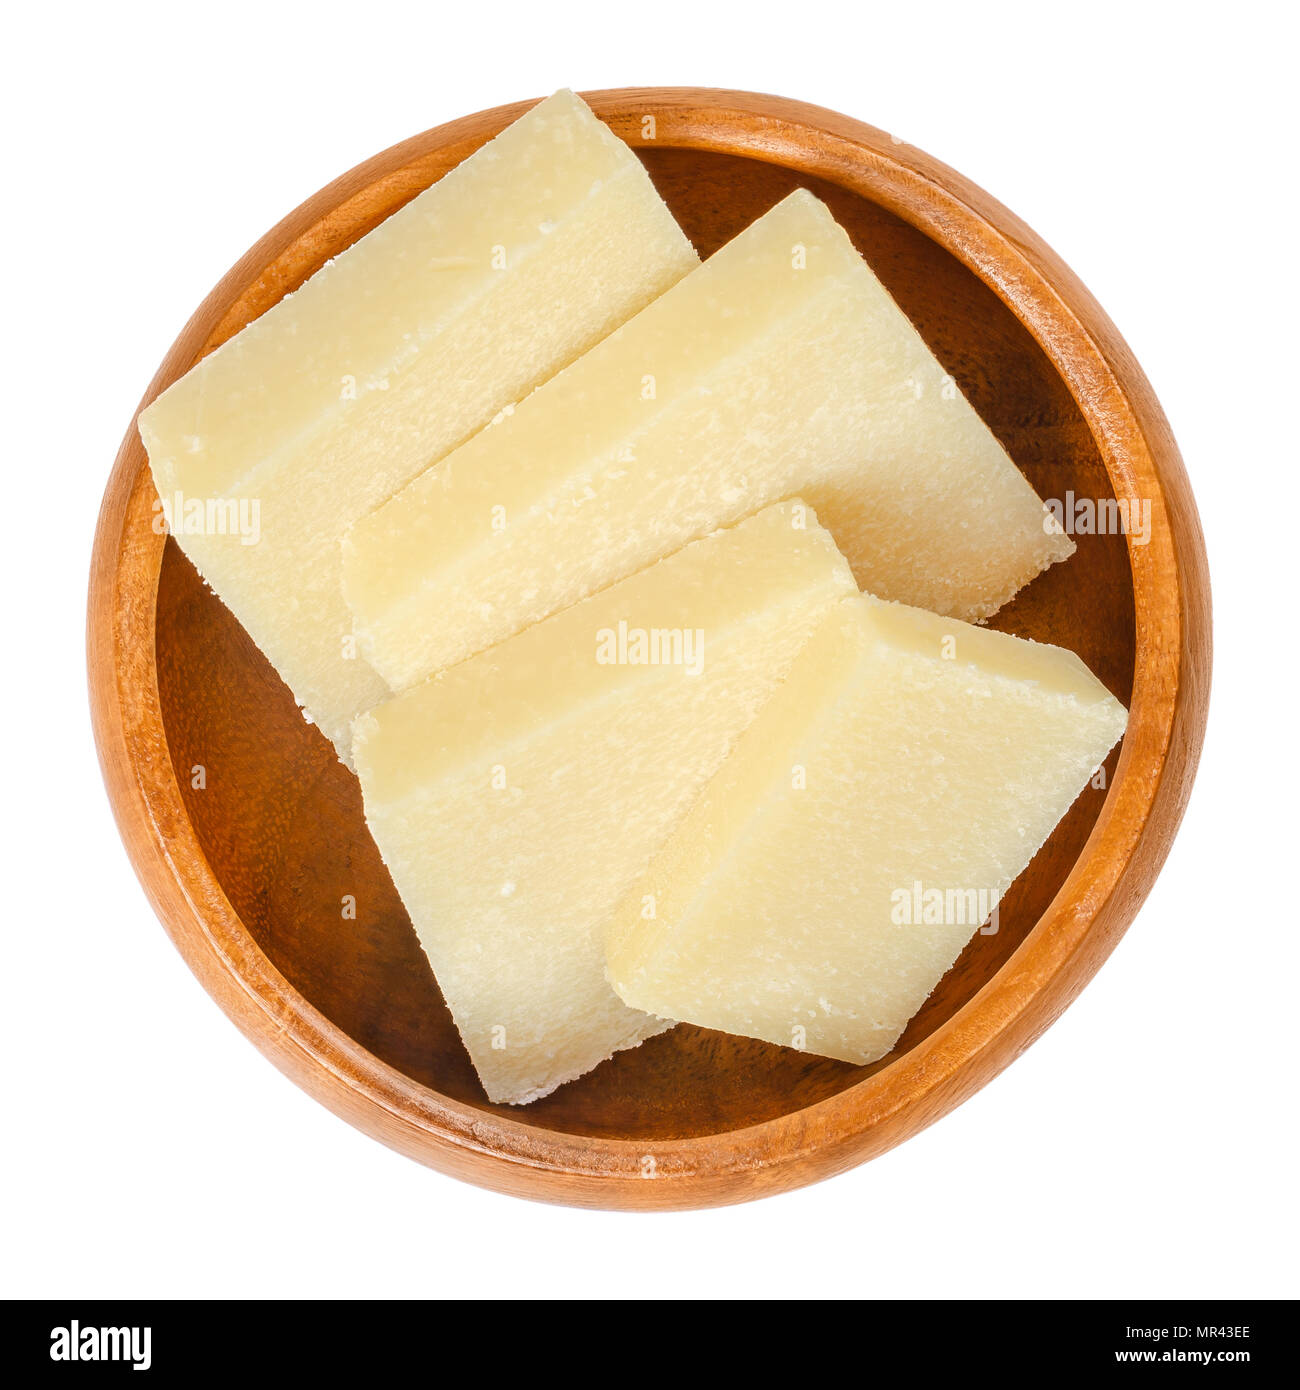 Tranches de fromage parmesan dans bol en bois. Le Parmigiano-Reggiano. Disque dur, fromage italien granulaire, de couleur légèrement jaune, fait de lait de vache non pasteurisé. Banque D'Images